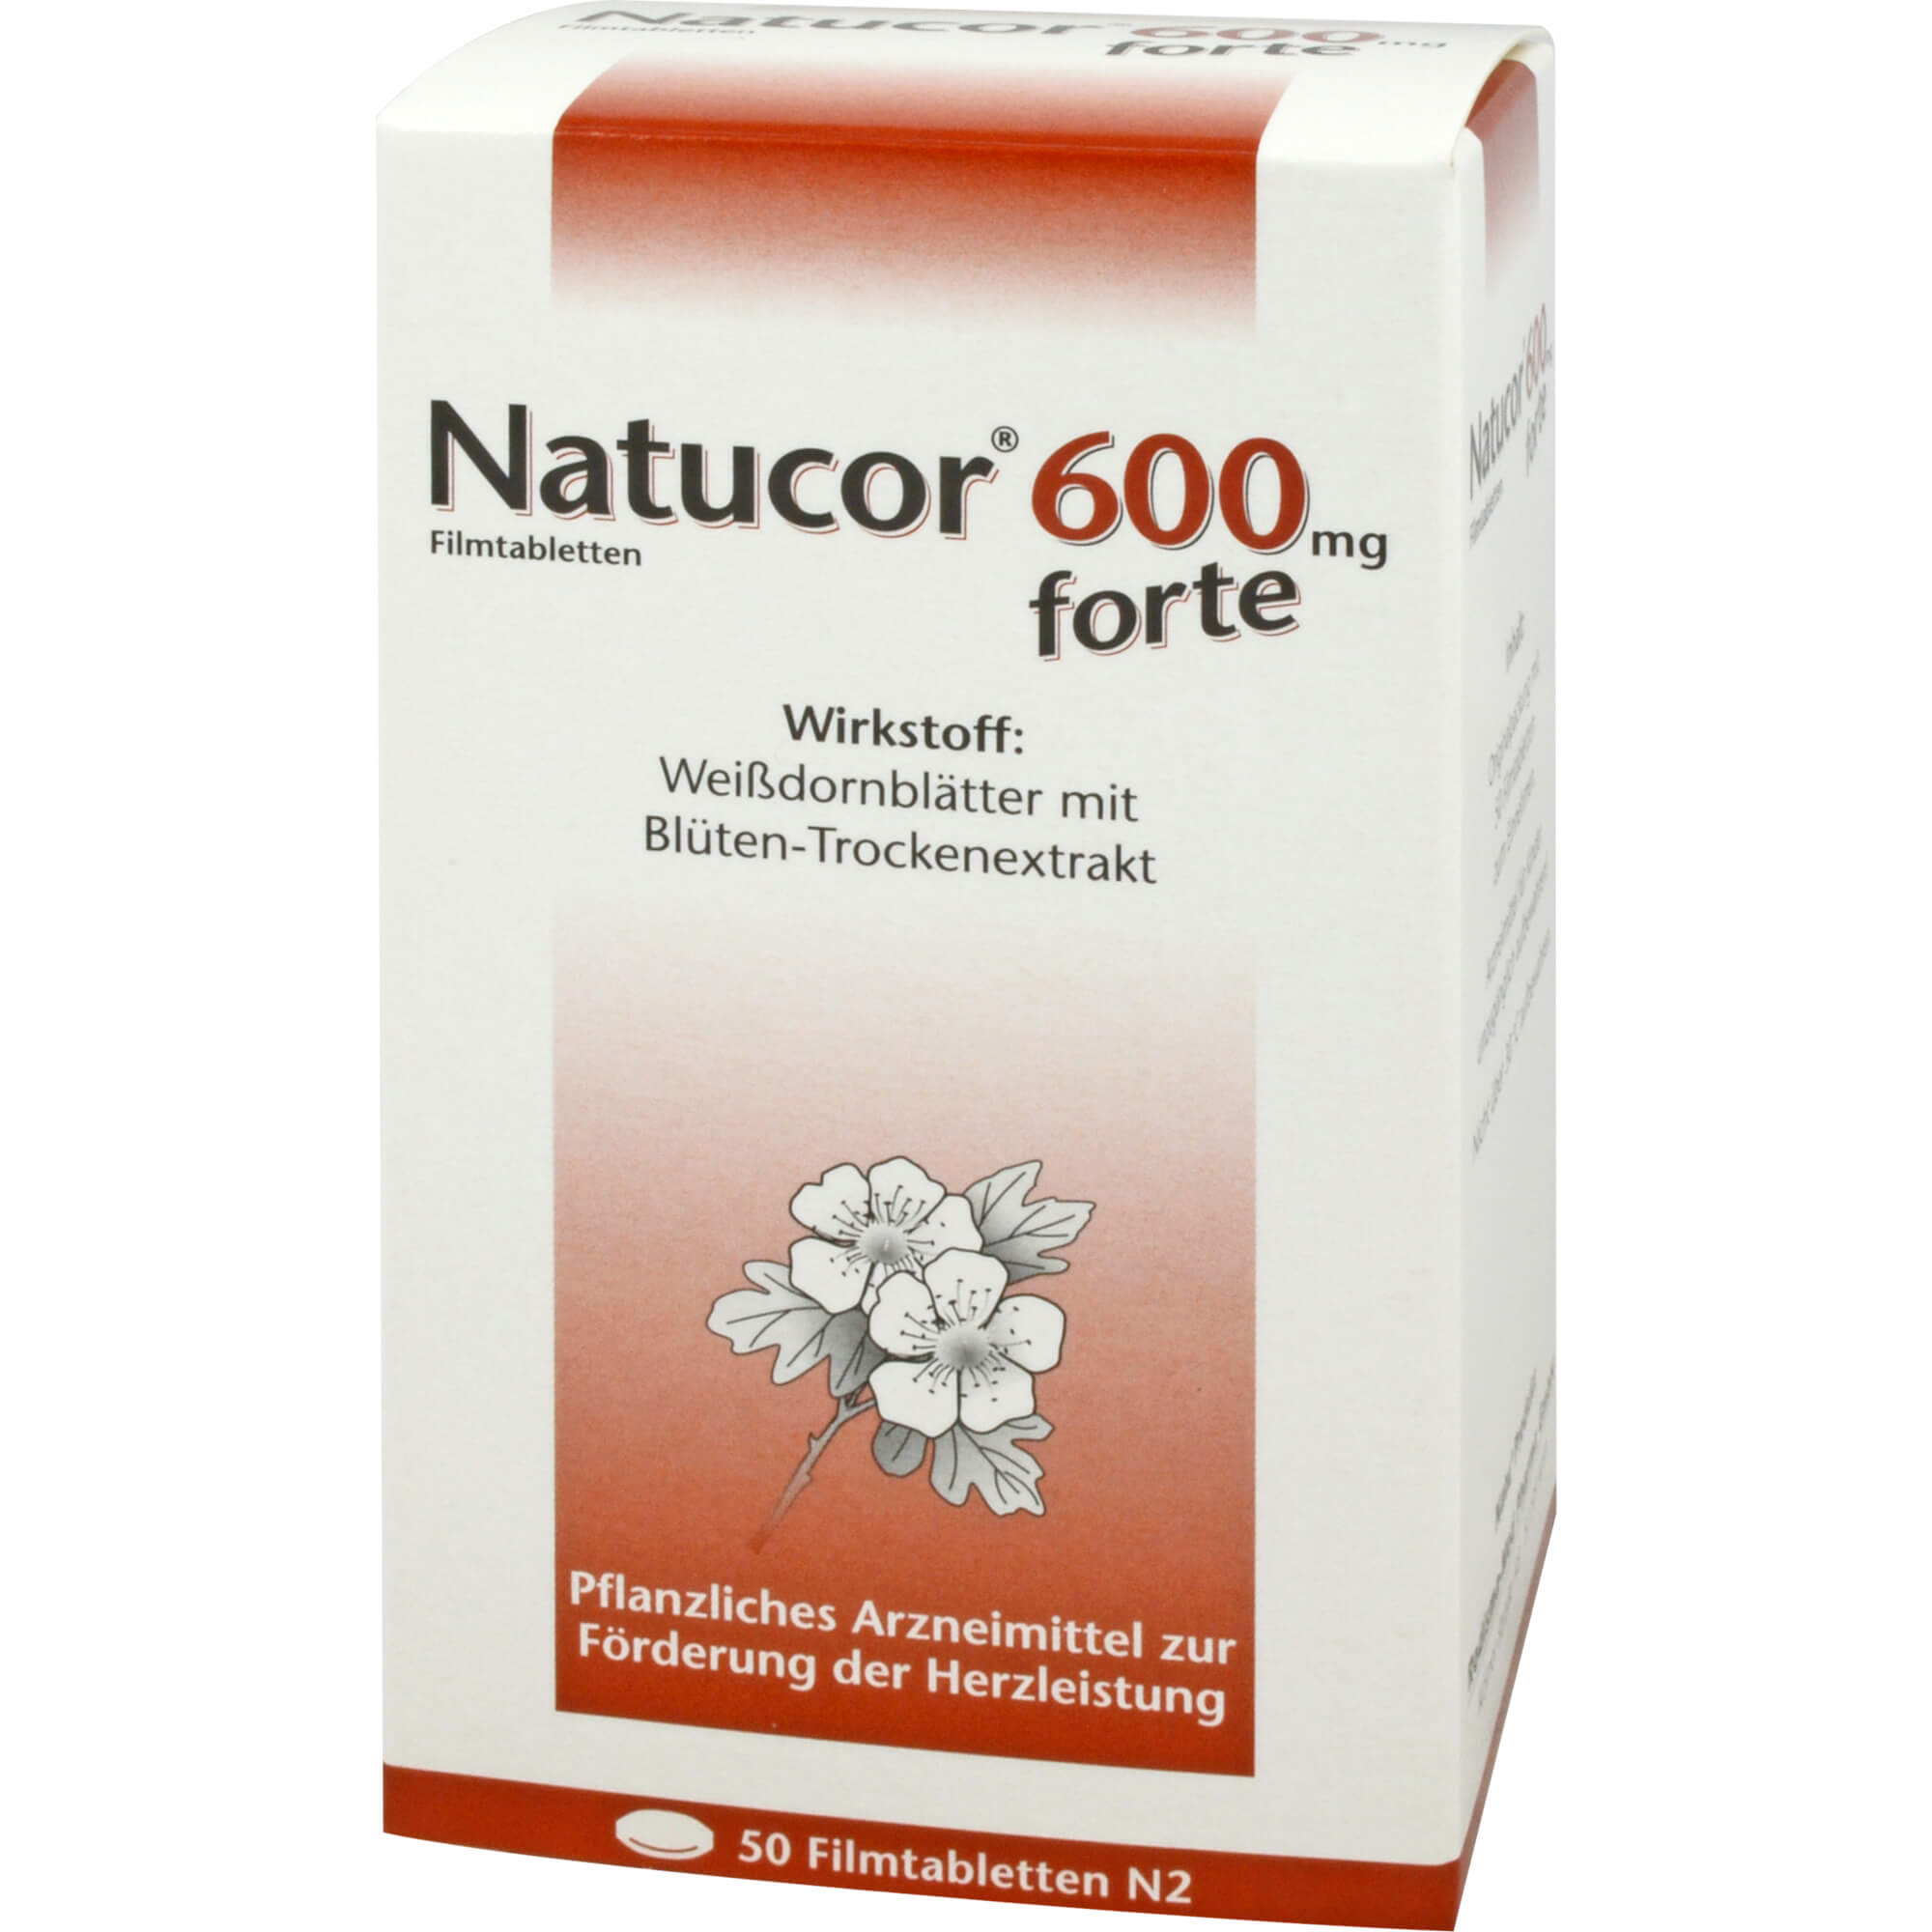 NATUCOR 600 mg forte Filmtabl.